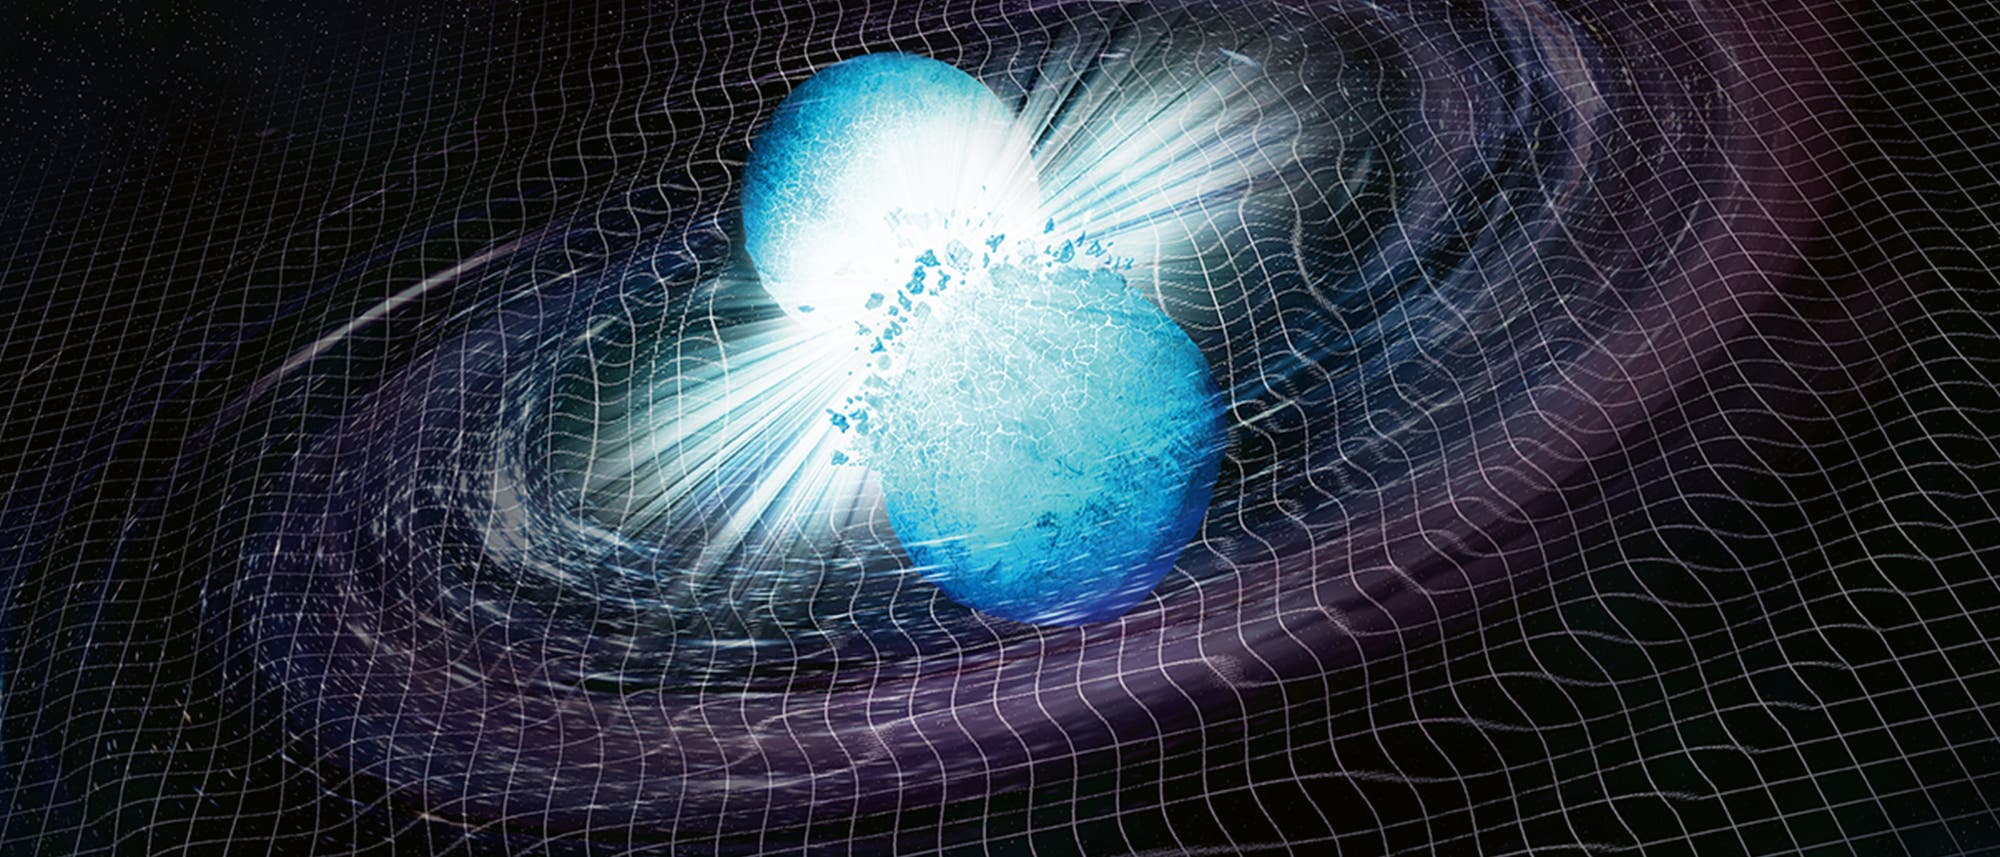 Die Illustration zeigt Neutronensterne, die zusammenstoßen, verschmelzen und die Raumzeit erschüttern